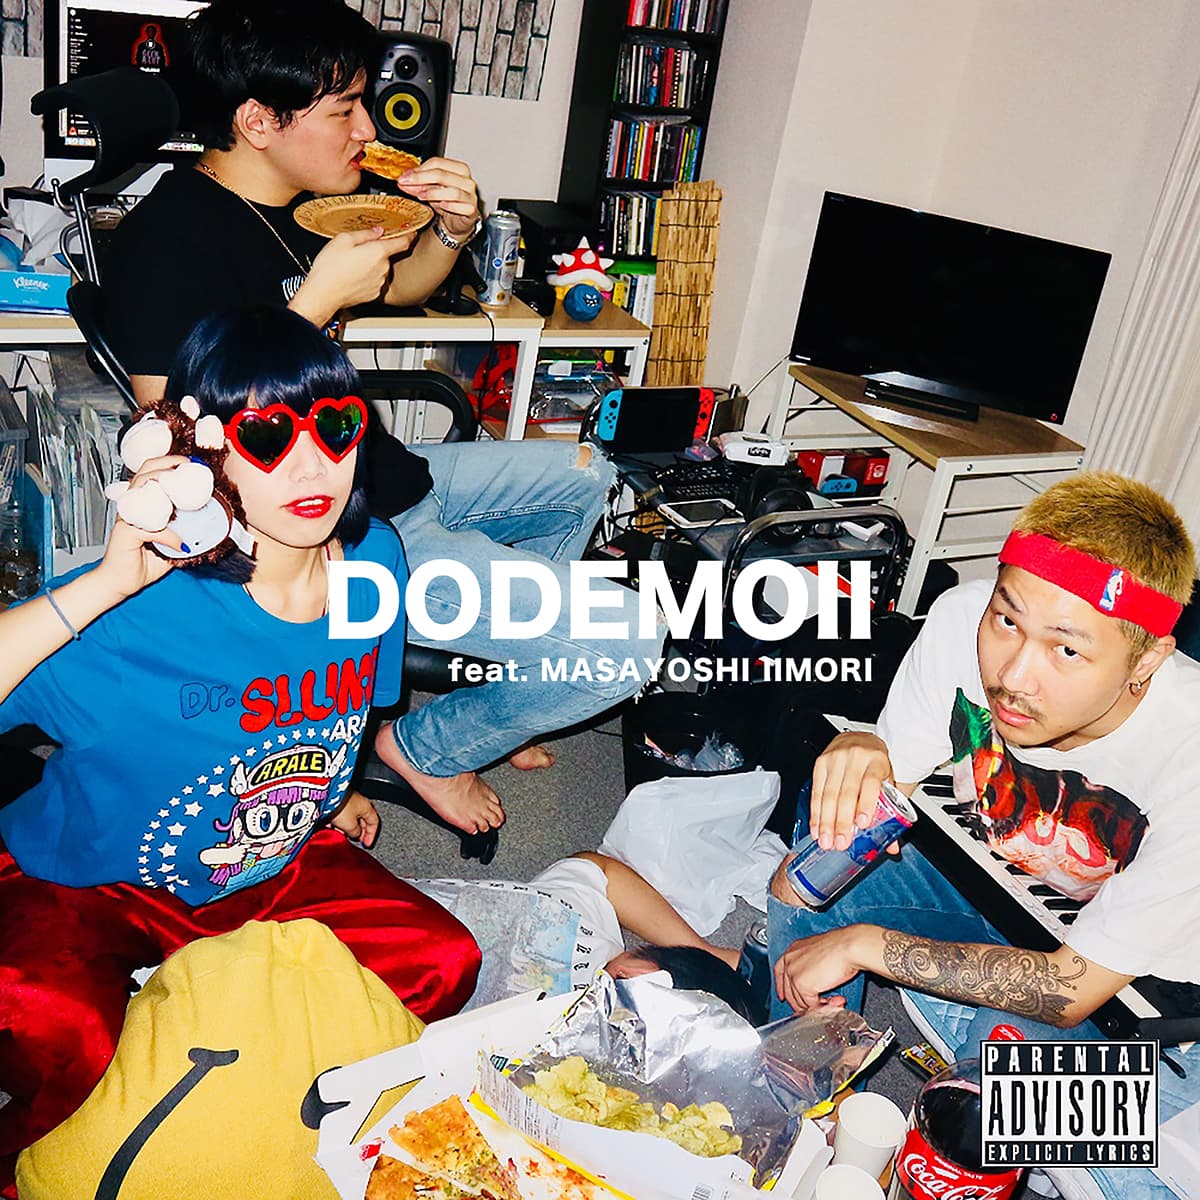 TENG GANG STARR - “Dodemoii feat. Masayoshi Iimori” Release